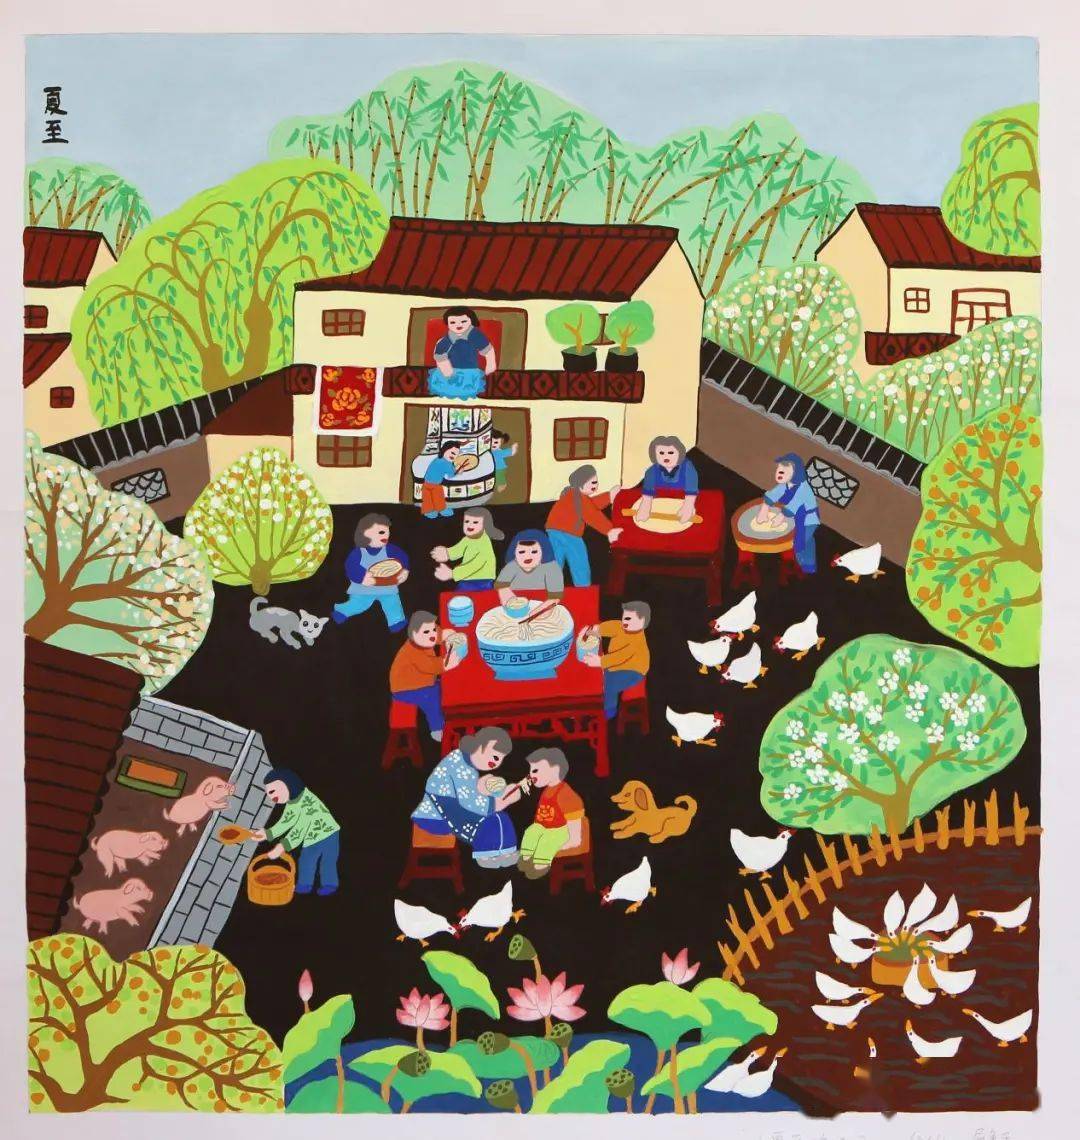 秀水田园美丽乡村二十四节气主题农民画比赛获奖作品正式公布